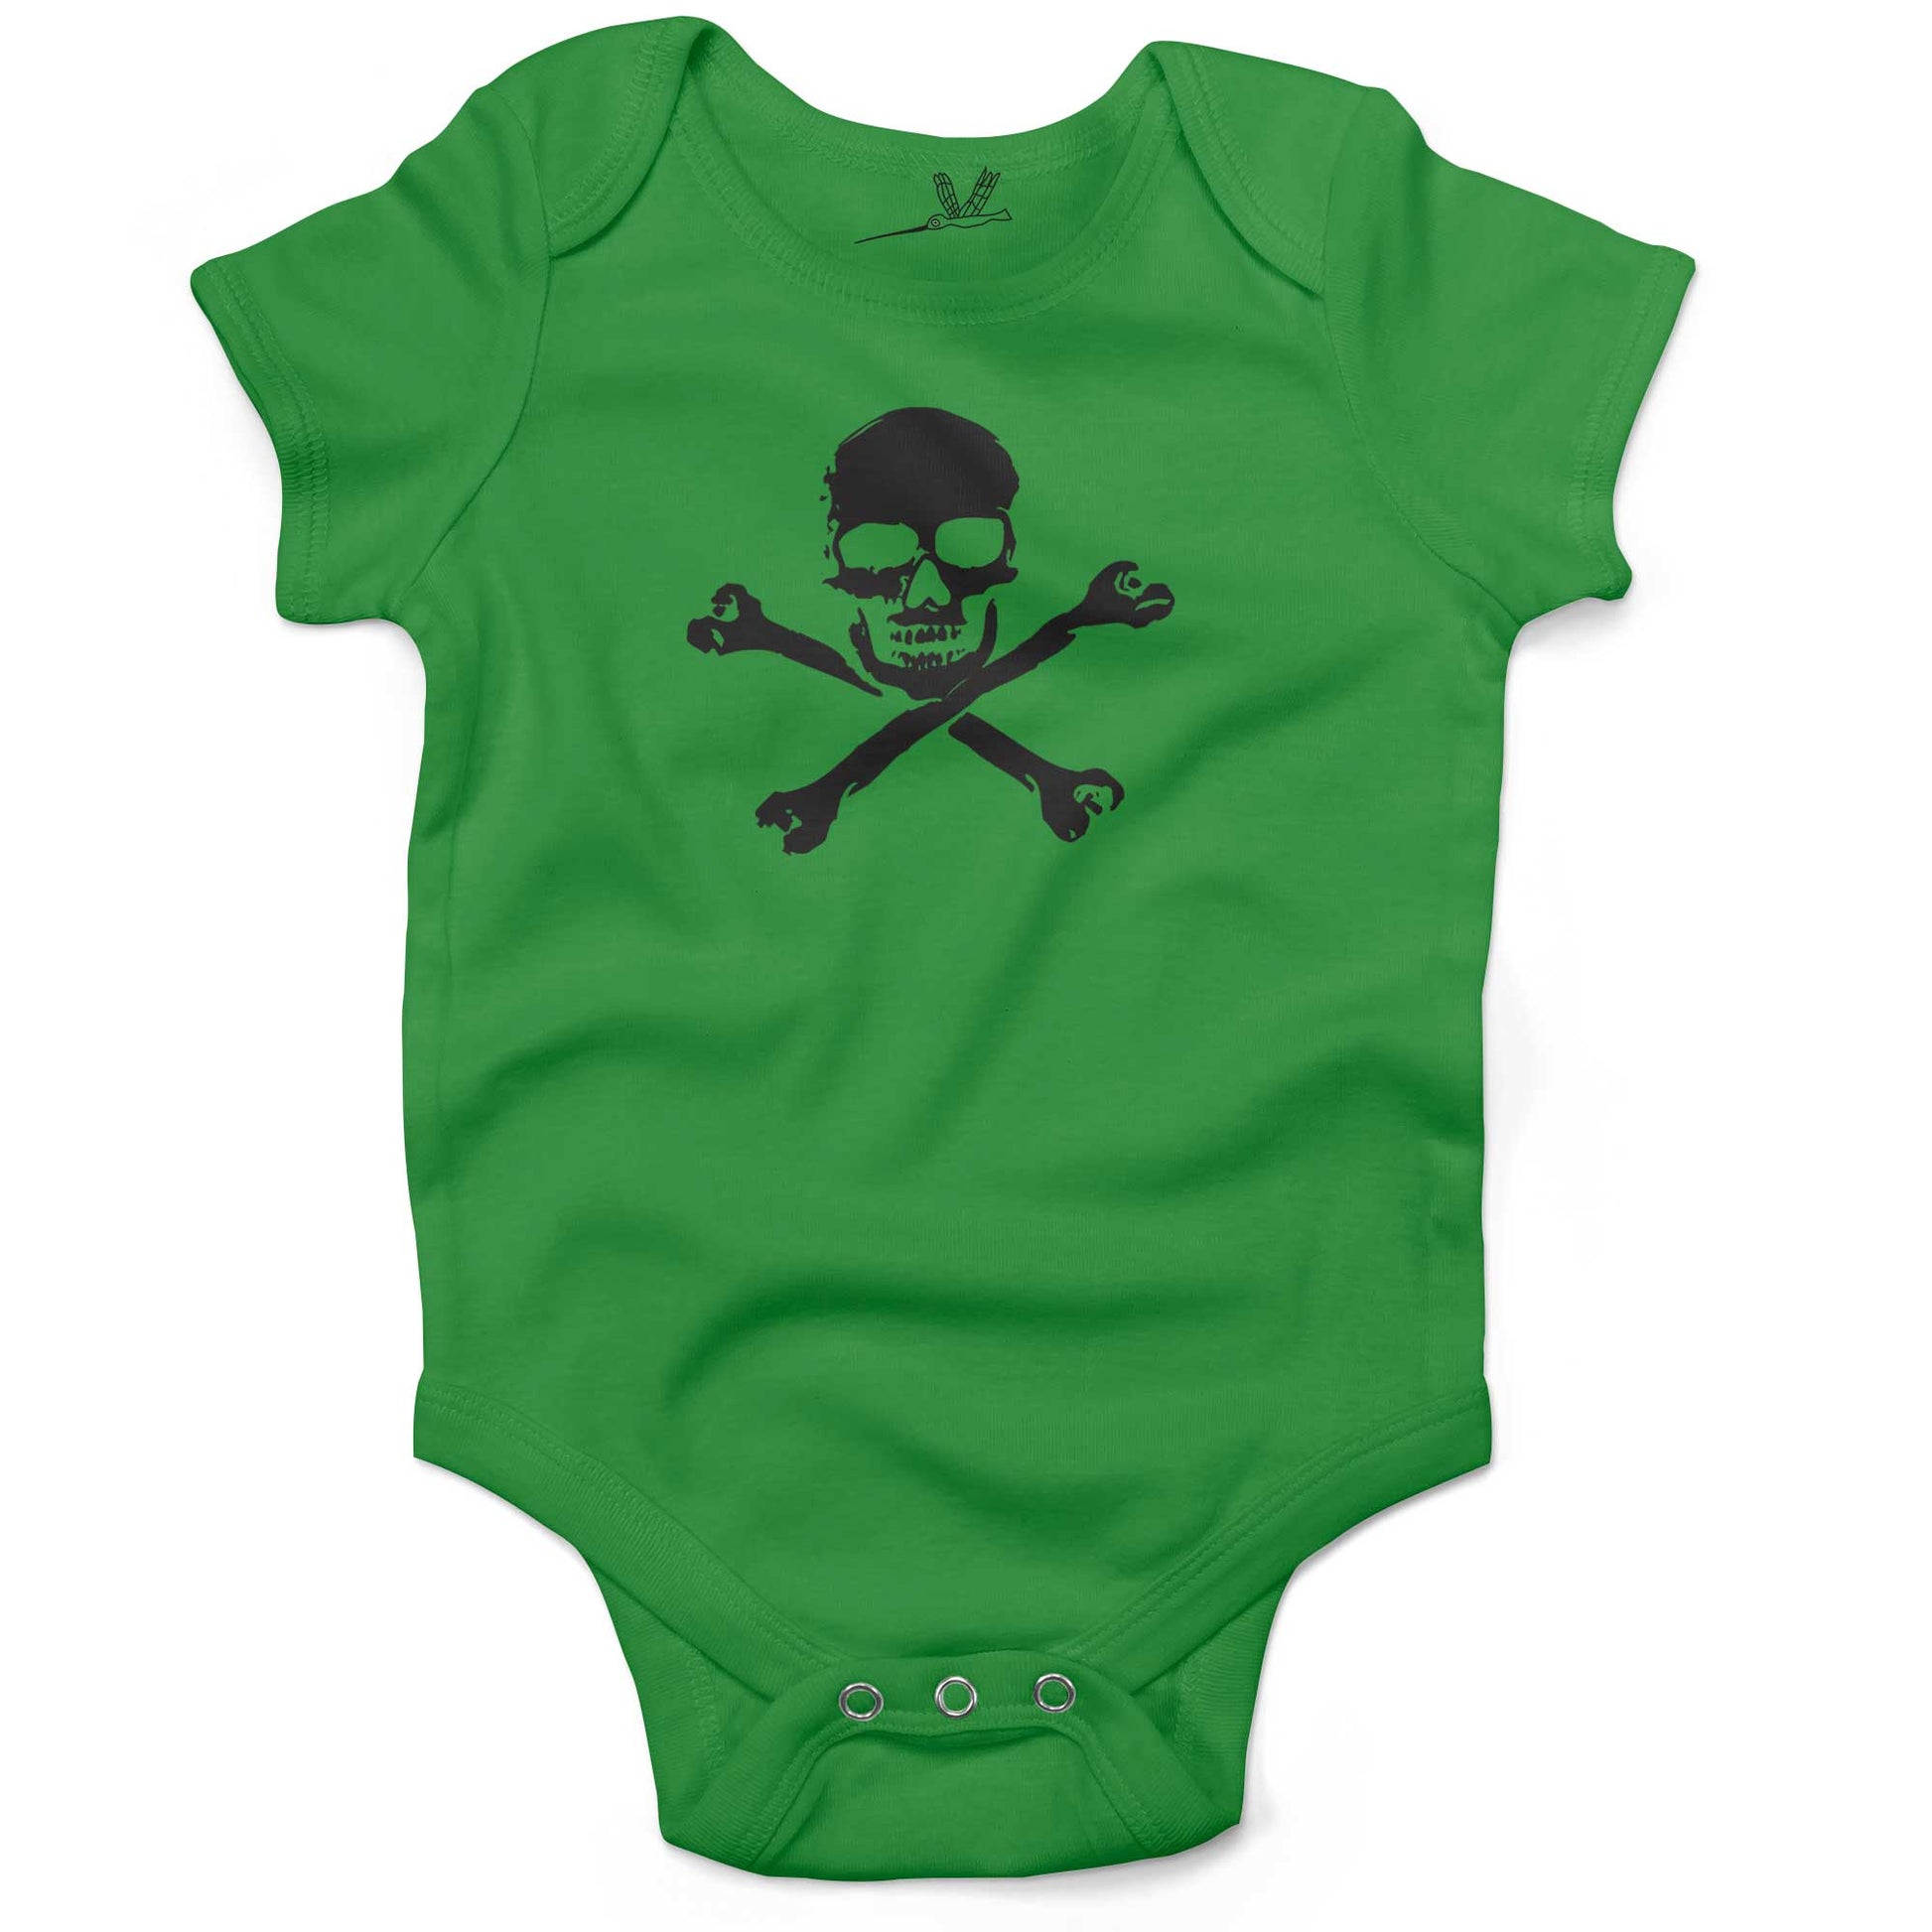 Skull Infant Bodysuit or Raglan Tee-Grass Green-3-6 months